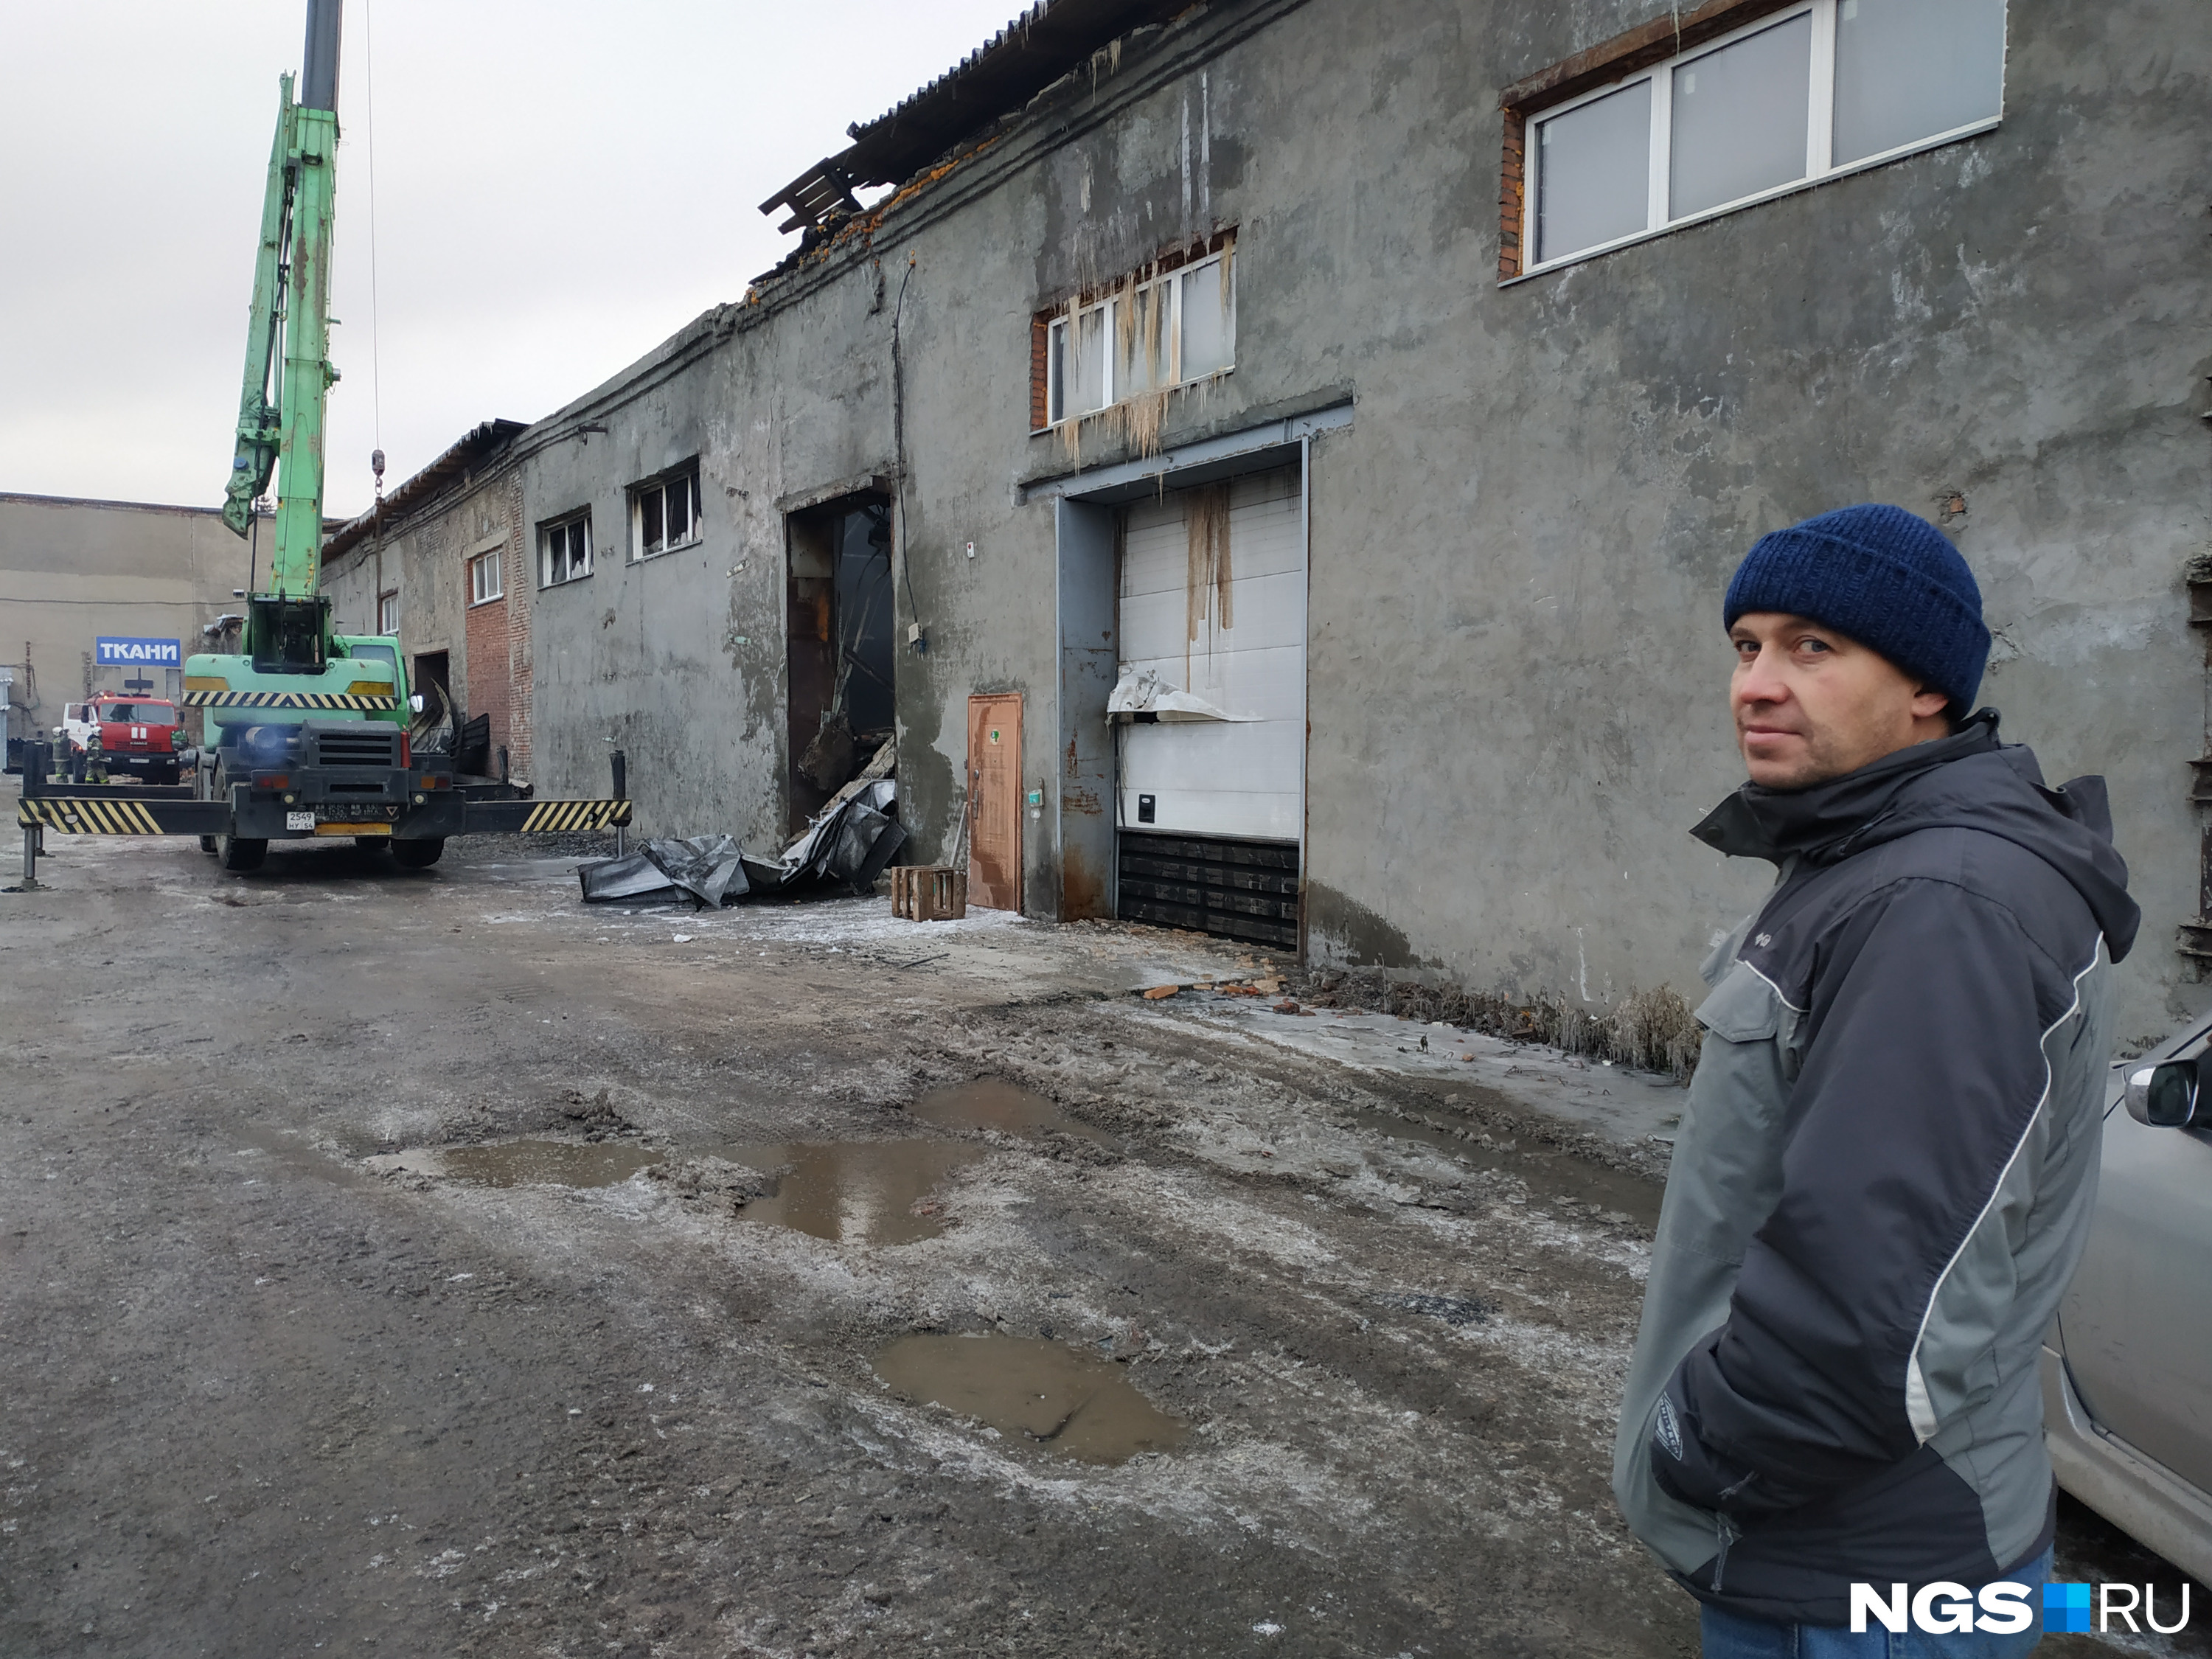 Алексей Морозов пока еще не знает масштаба последствий: пожарные разгребают завалы, внутри помещения мужчина еще не был